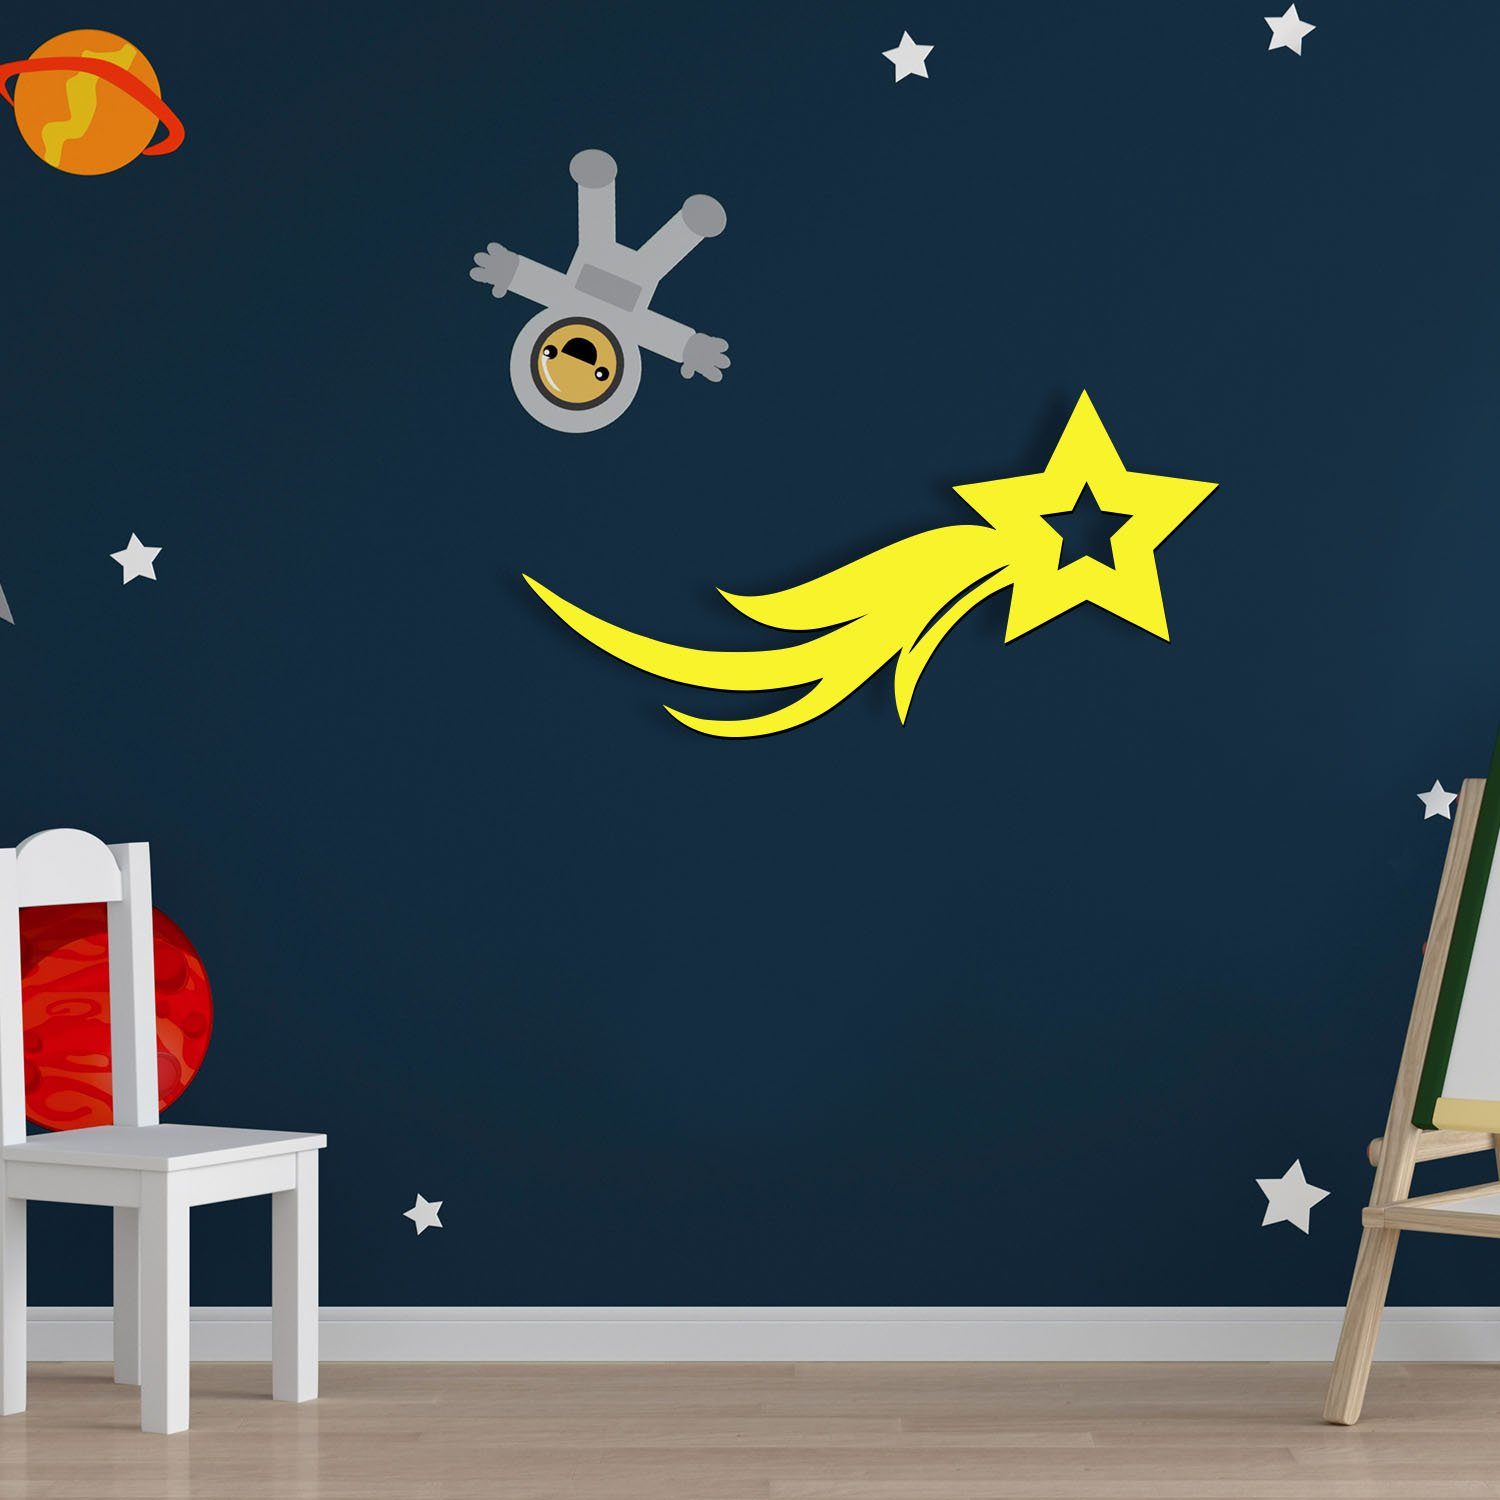 Deko, Lampe Ohne für Wand Nachtlicht Namofactur Sternschnuppe Kinderzimmer LED Kinder, Warmweiß fest Nachtlicht LED integriert, Zugschalter/Stern,